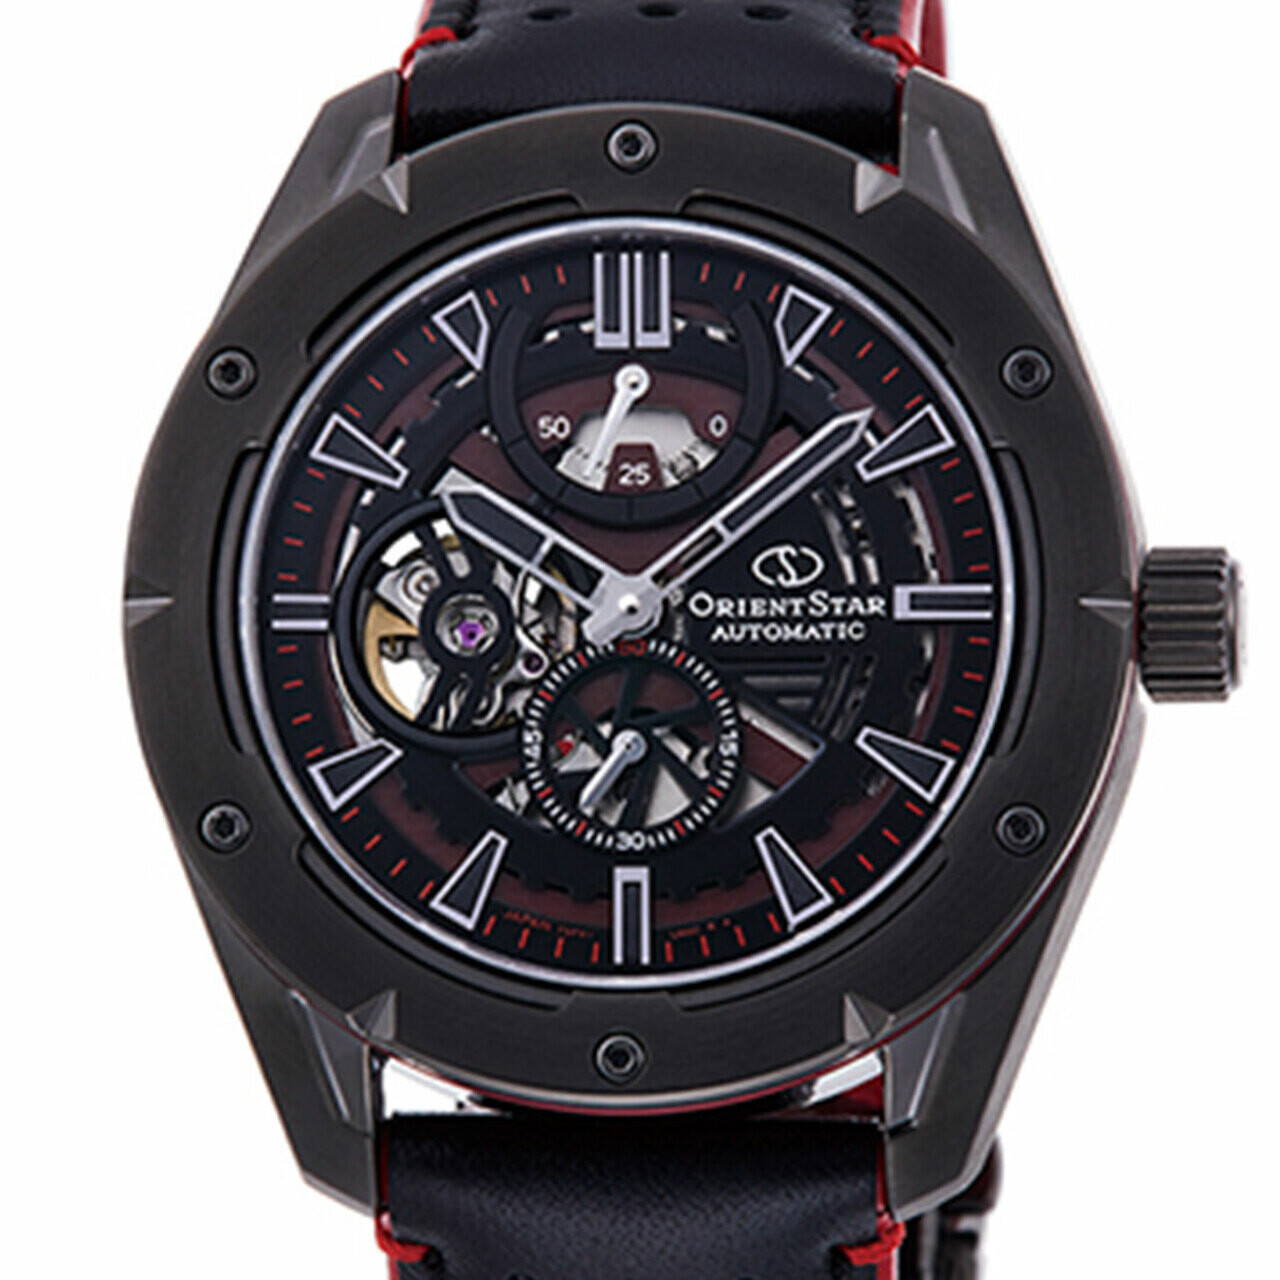 ​Reloj automático hombre Orient Star Avant-garde Skeleton RE-AV0A03B dial negro 42.6mm Cristal de Zafiro anti-reflejos correa de cuero 100m Reserva de marcha 50 horas